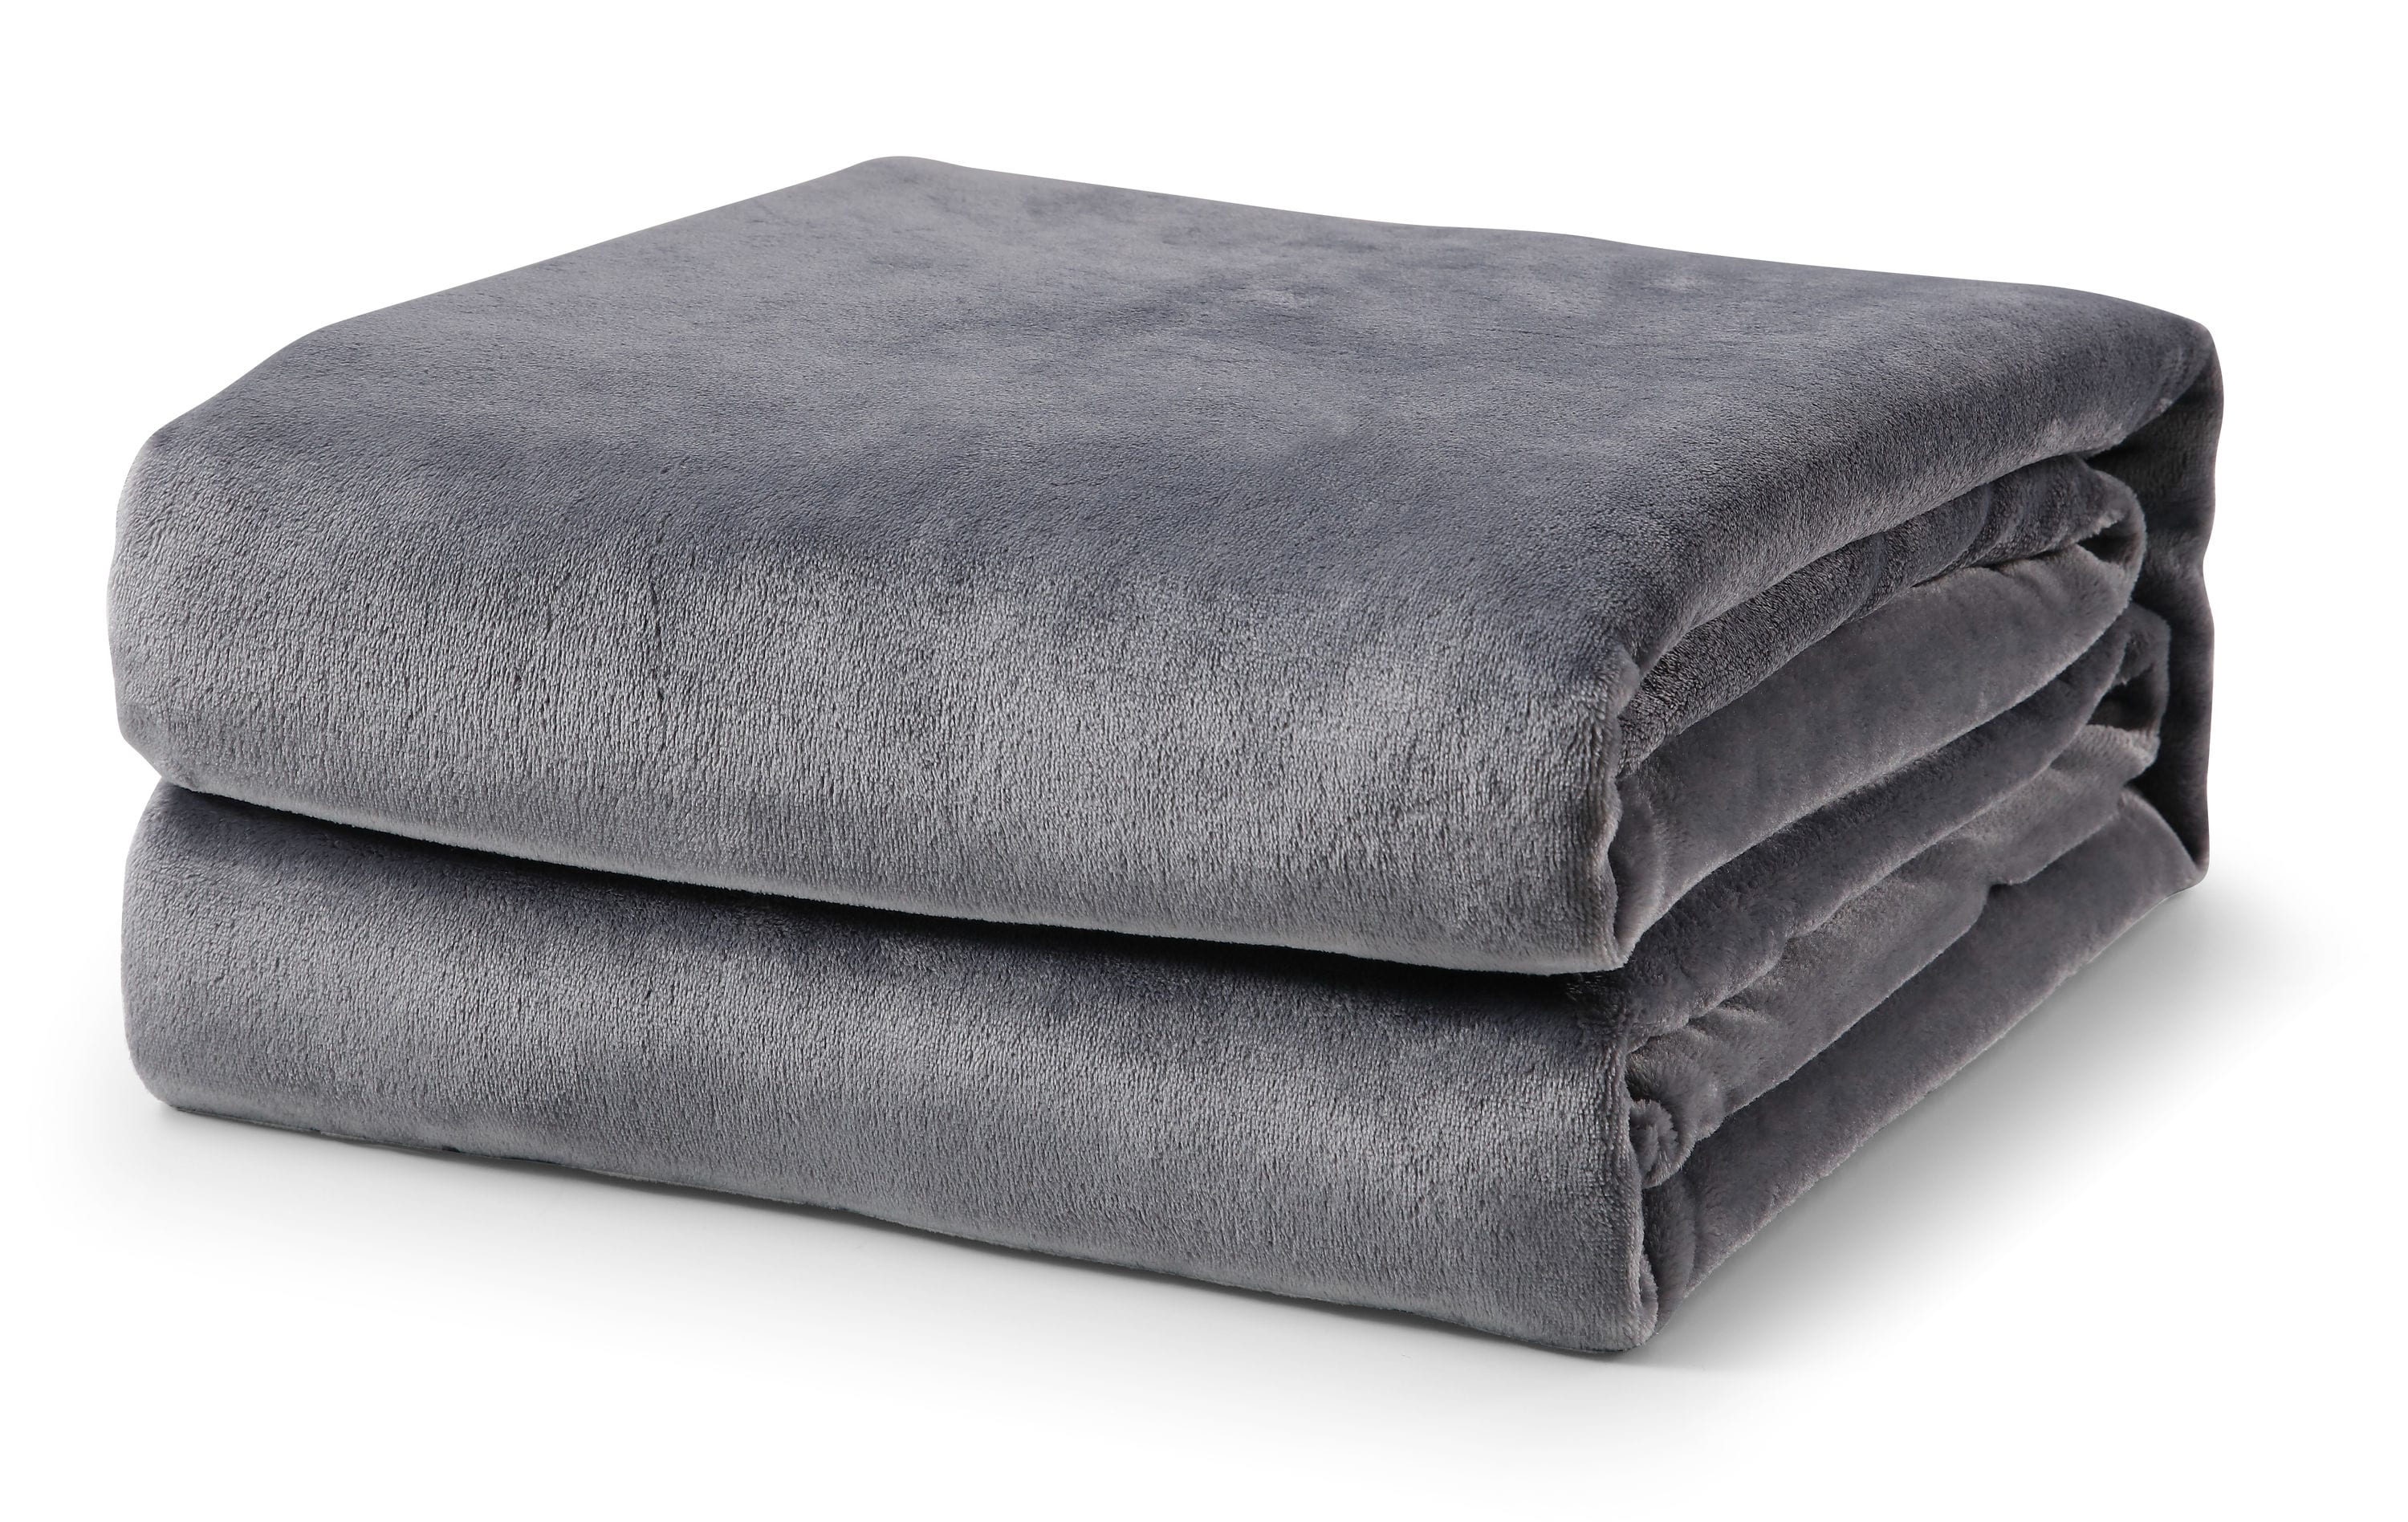 LBaiet Grey Fleece Twin Blanket 60-inx80-in 100% Polyester Gray